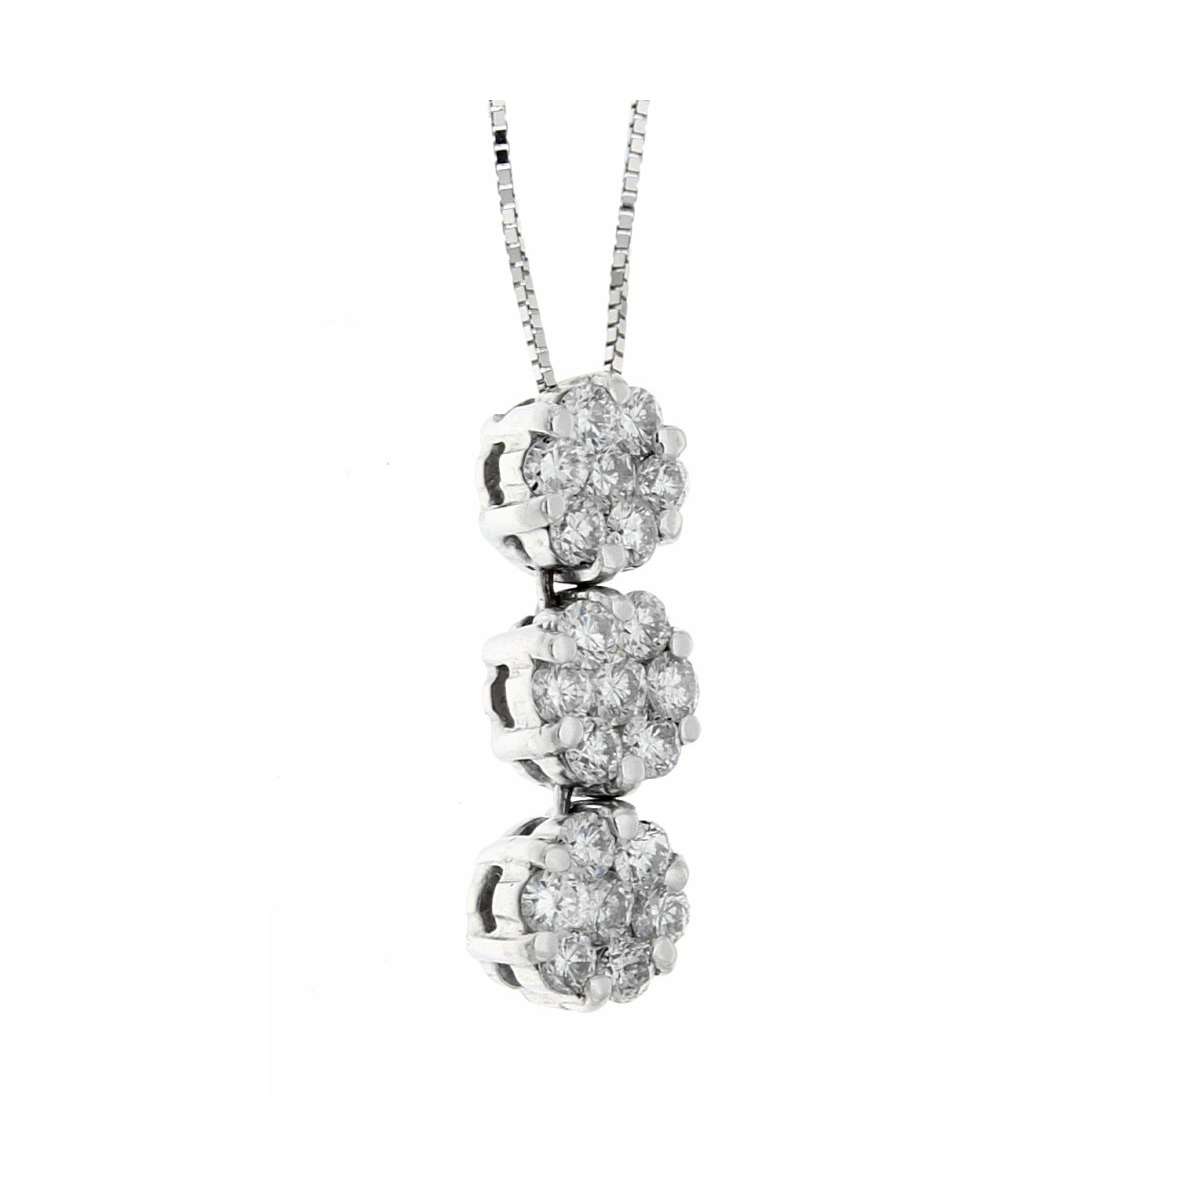 Trilogy necklace 0.87 carats diamond G-VS1 